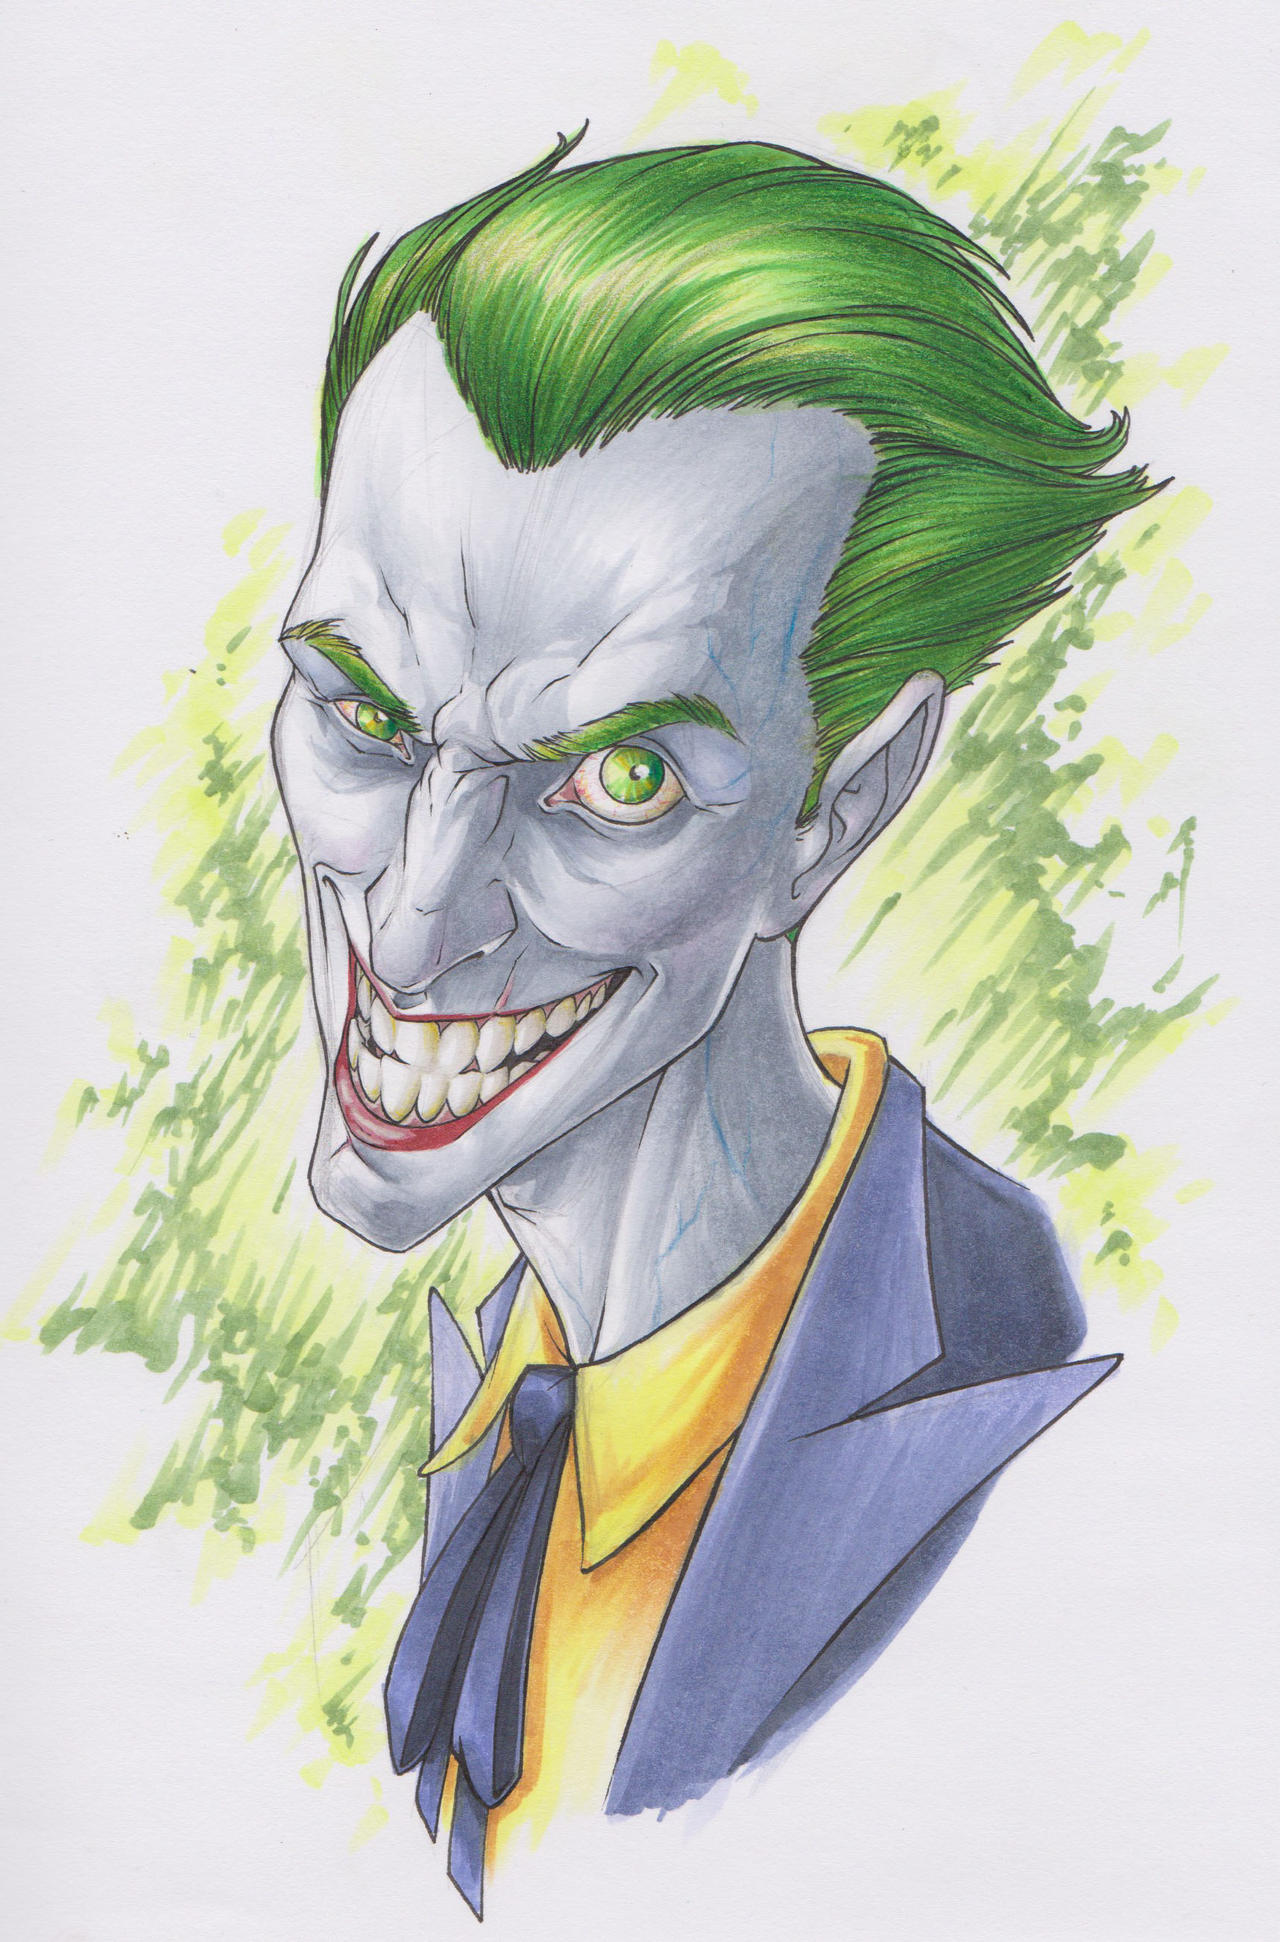 Joker head sketch by Smashed-Head on DeviantArt